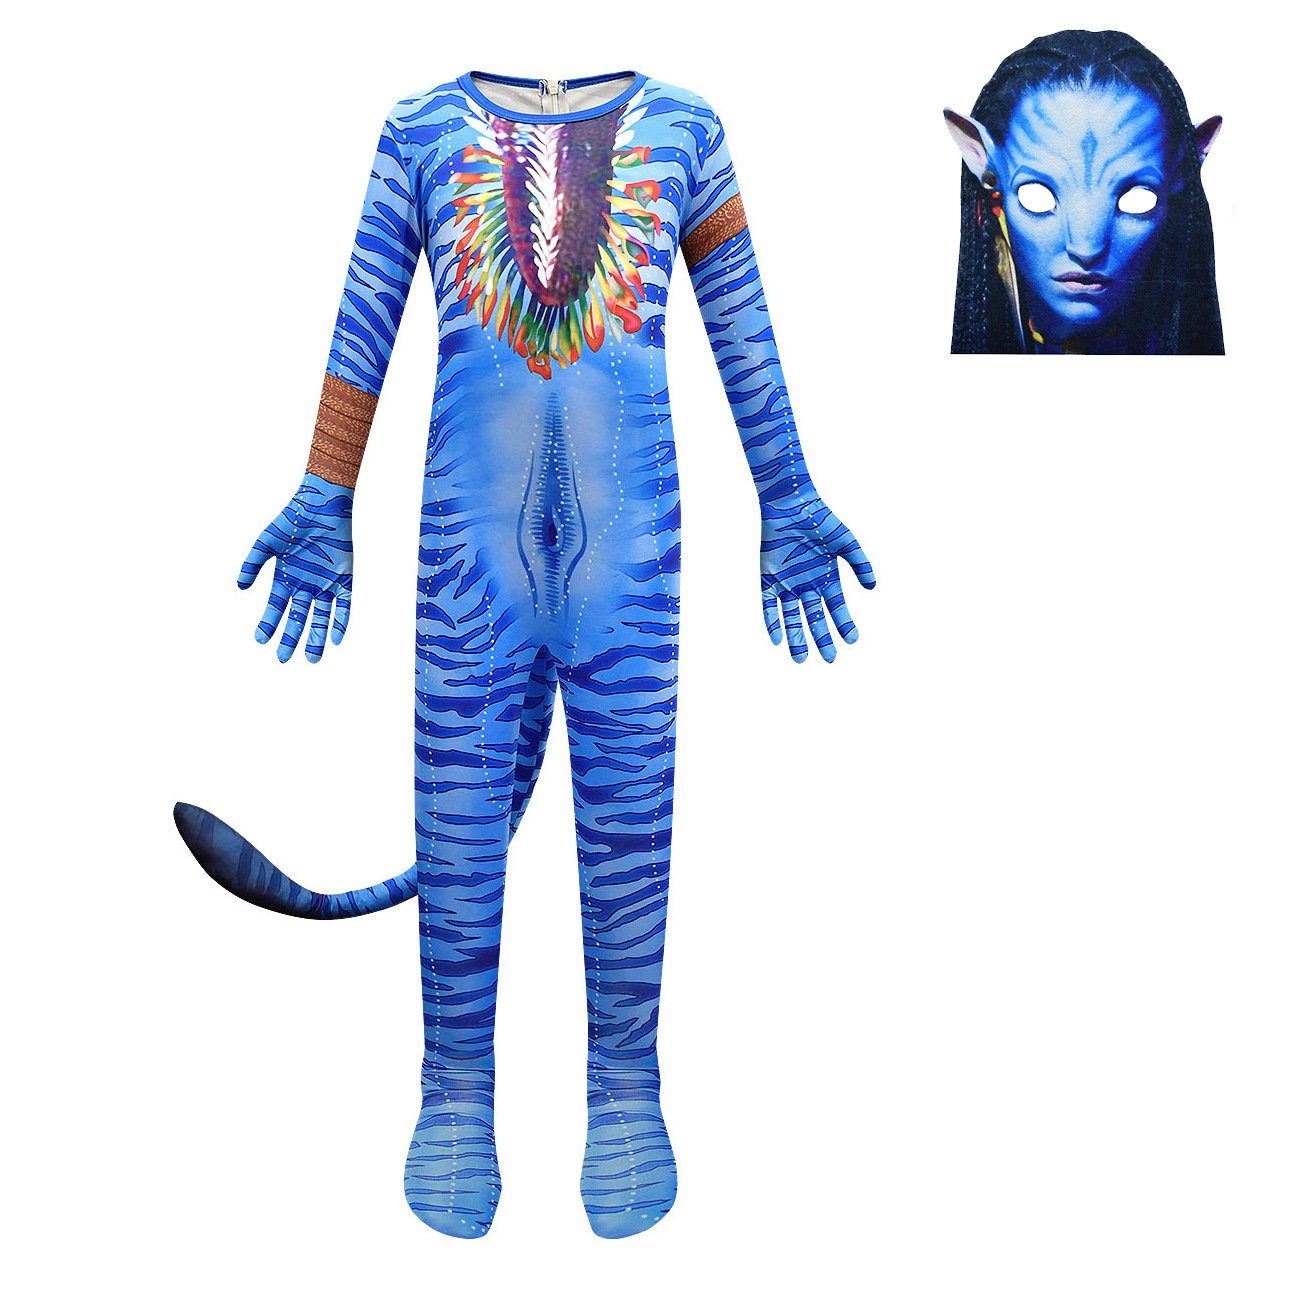 Avatar: The Way of Water Costume Neytiri Cosplay zentai  jumpsuit For Kids